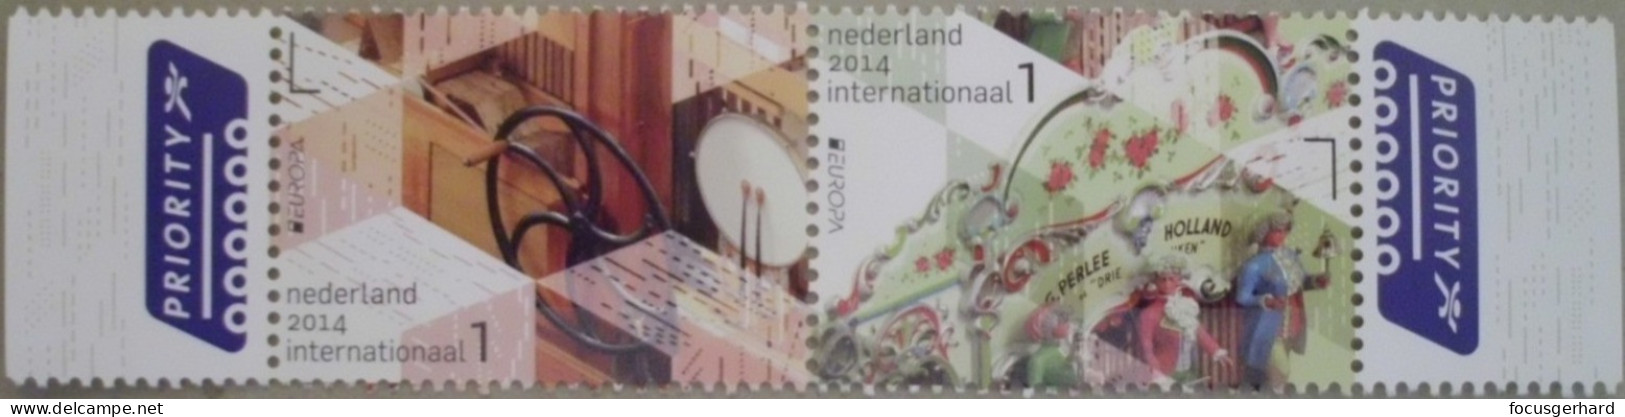 Niederlande   Europa   Cept    Musikinstrumente   2014 ** - 2014